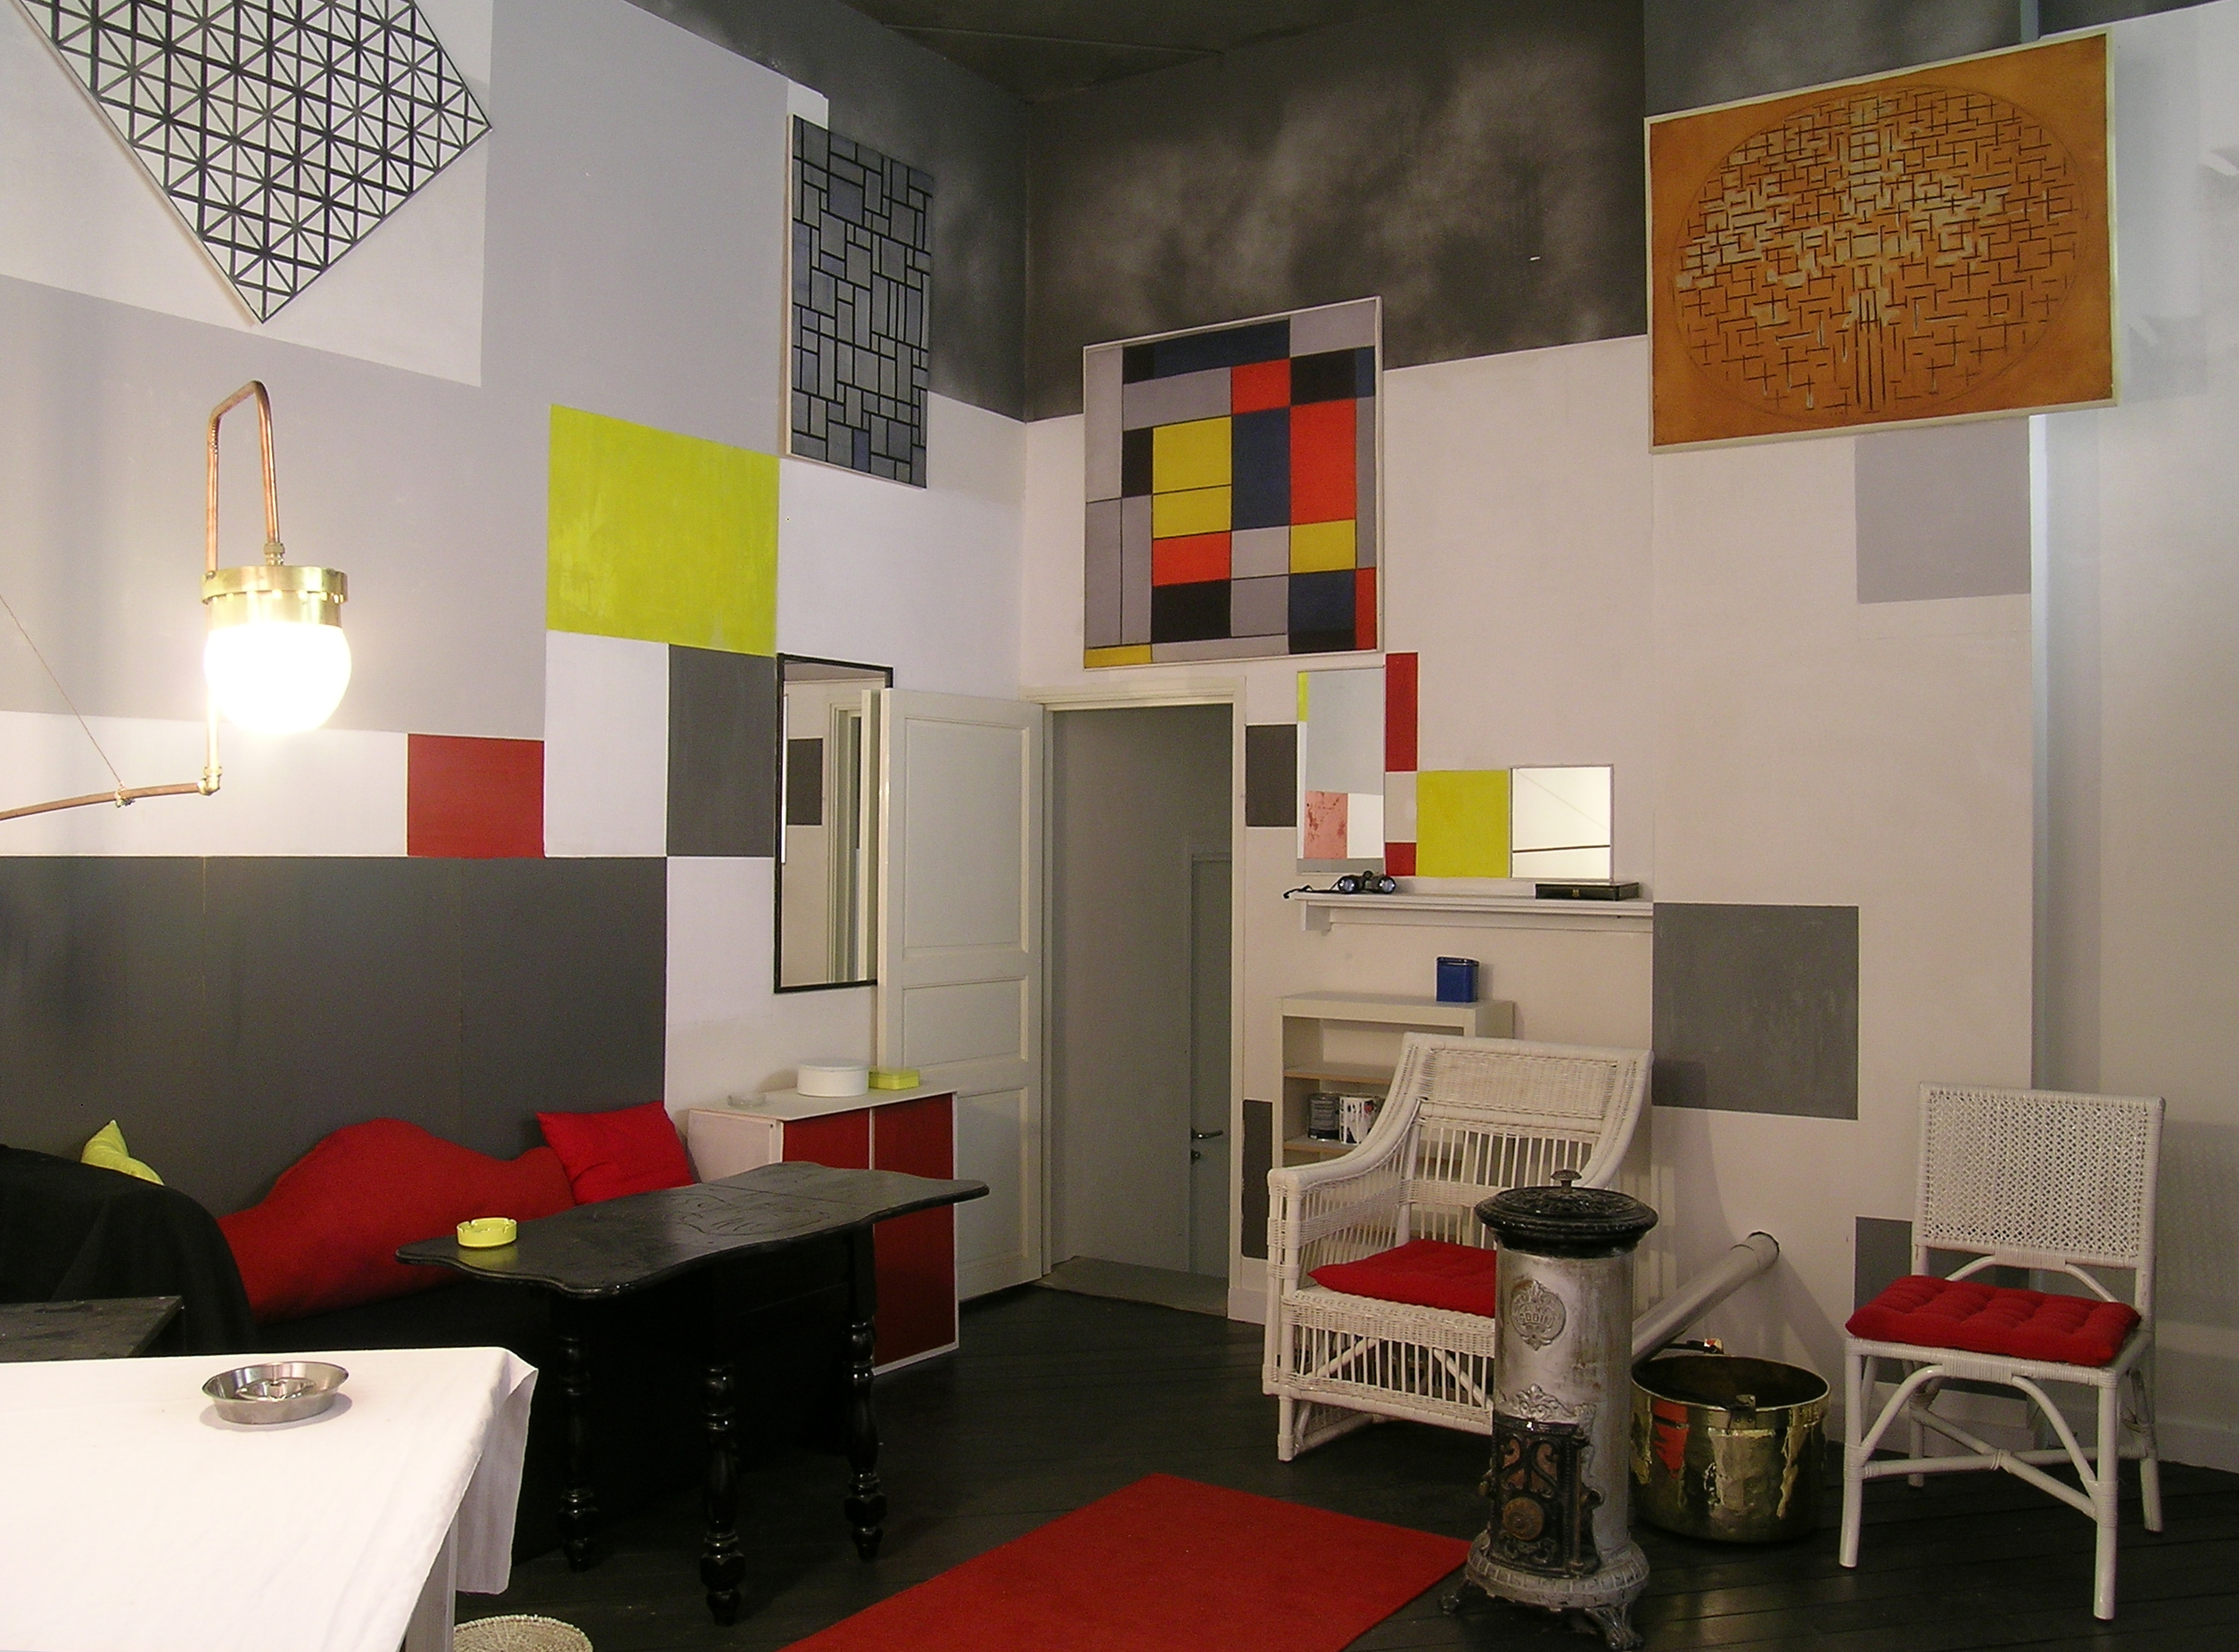 Parijse atelier van Piet Mondriaan